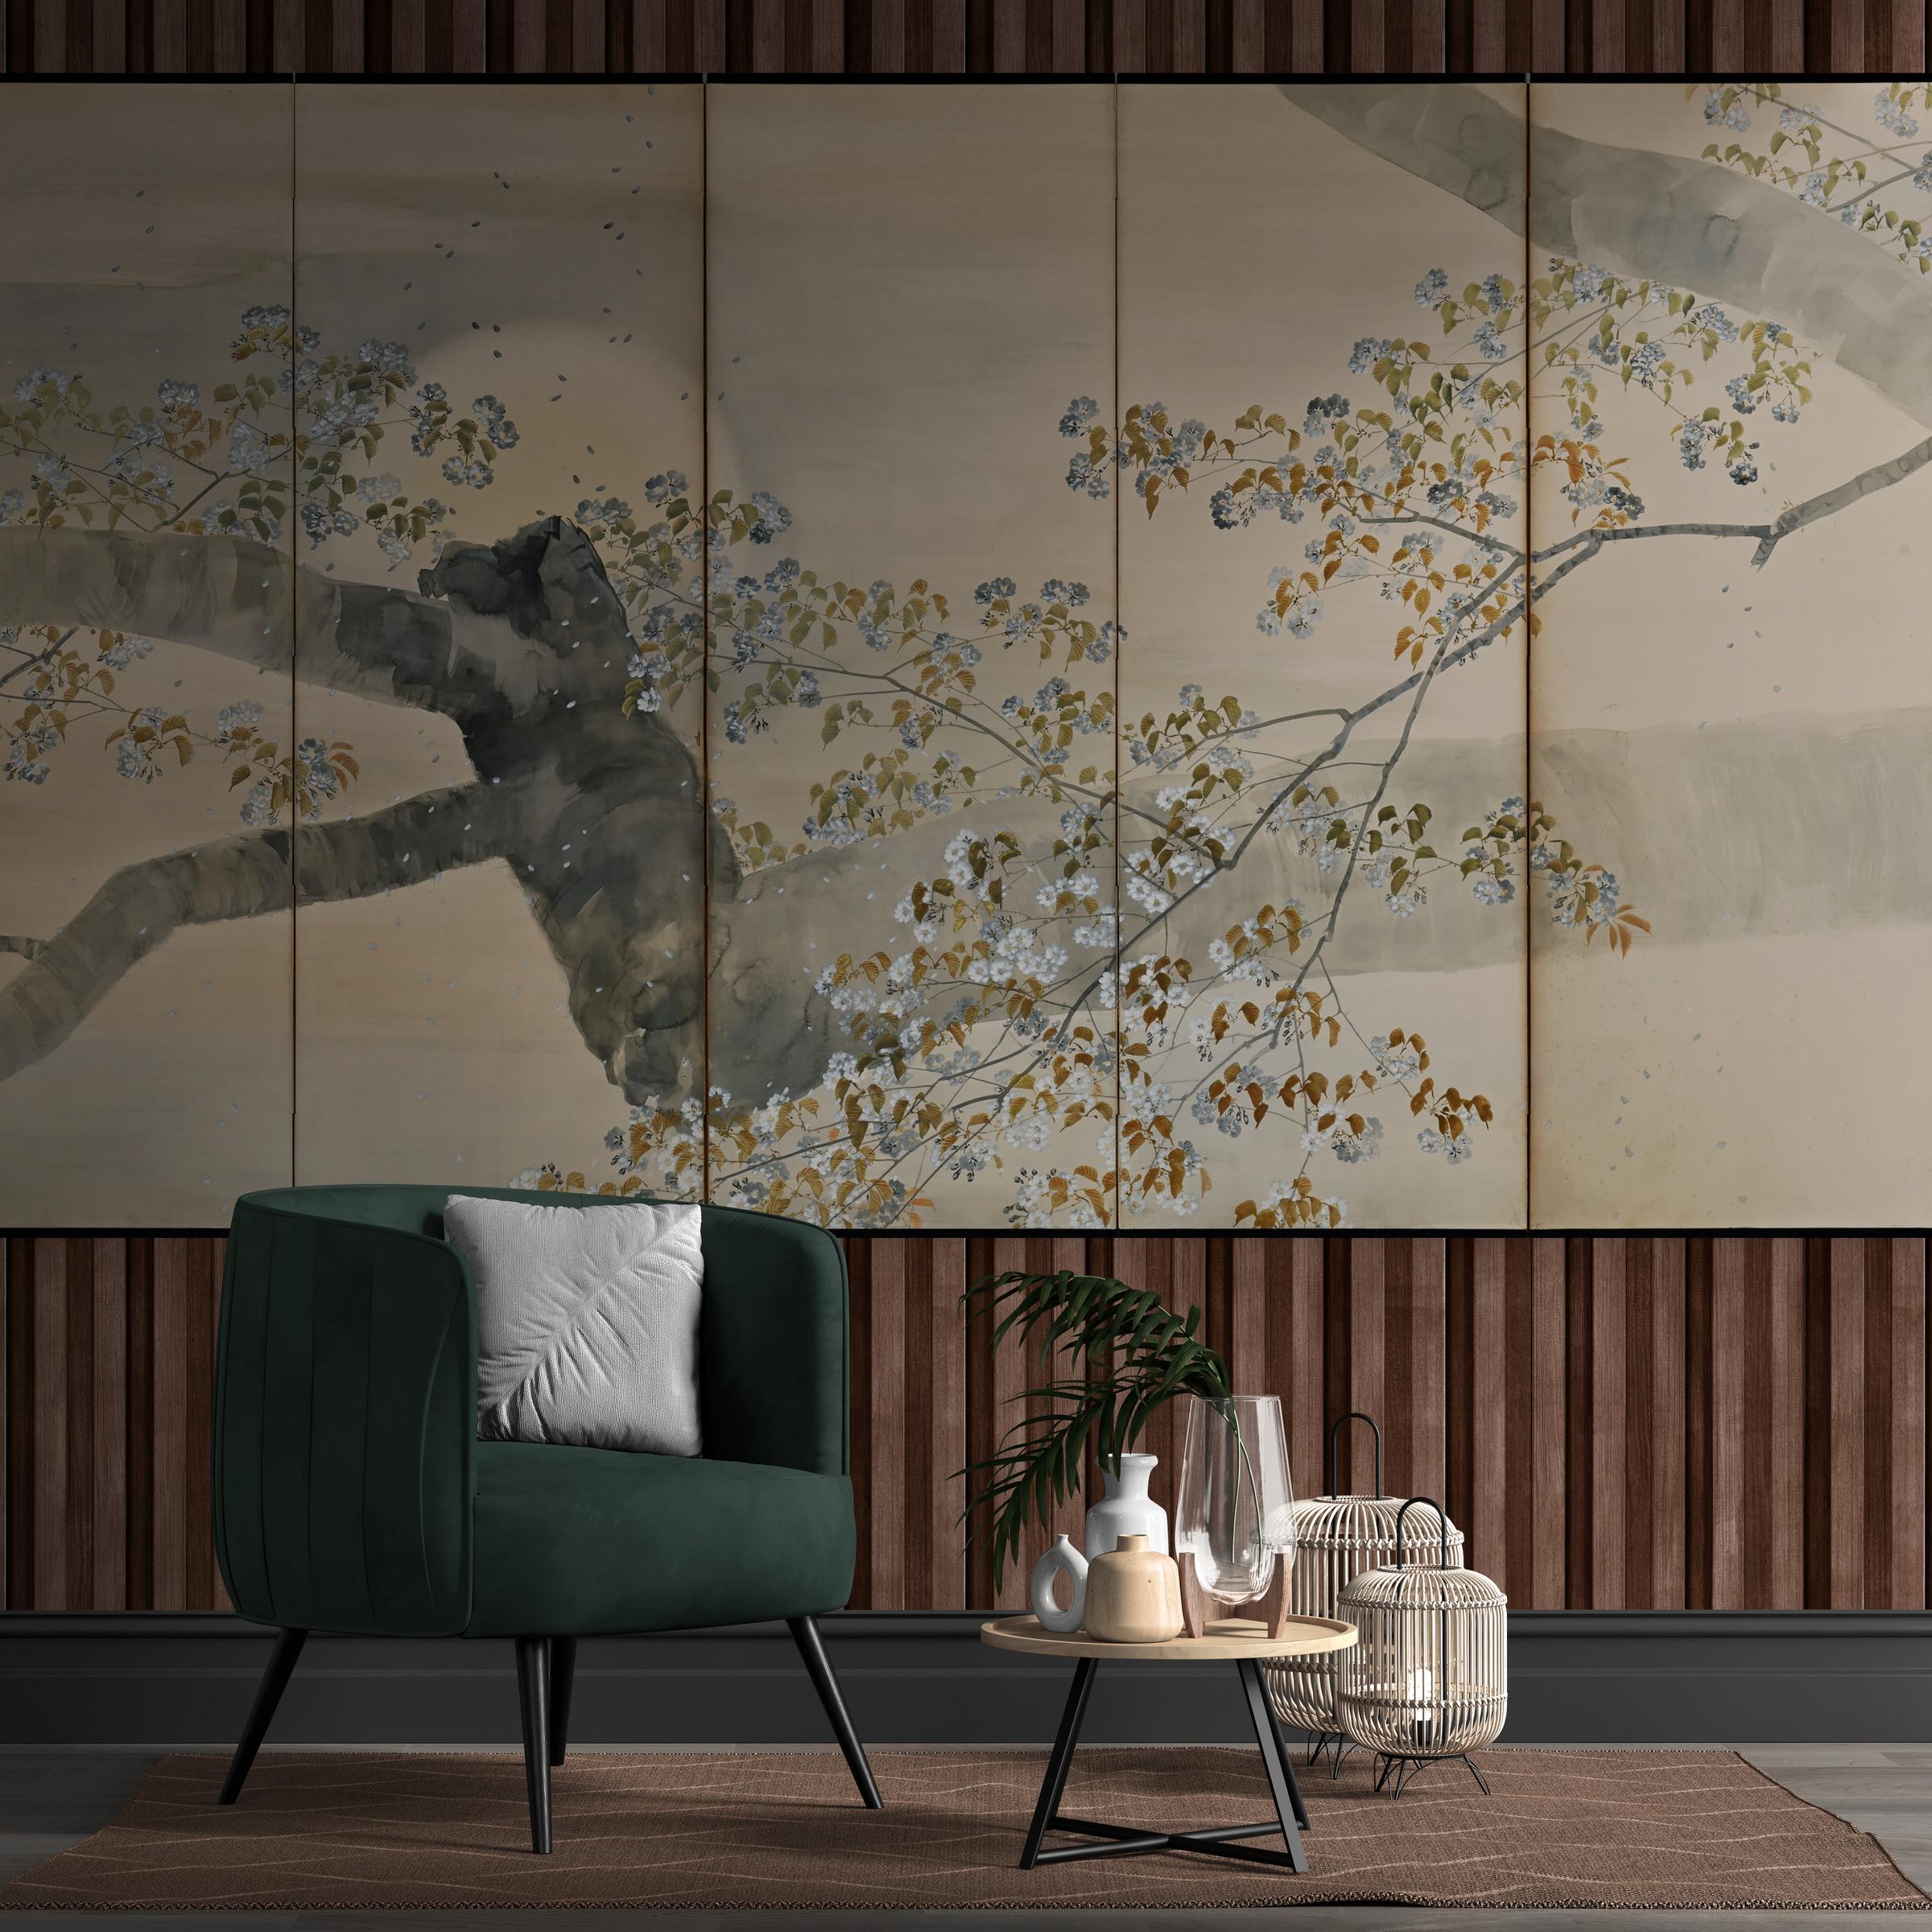 Kobayashi Shosen (1877-1946)

Kirschblüten im Mondlicht

Sechspaneliger japanischer Bildschirm. Tusche, Farbe und Gofun auf Papier.

Das Bild zeigt eine atemberaubende Szene, die auf einem sechspassigen japanischen Paravent aus der Meiji-Zeit